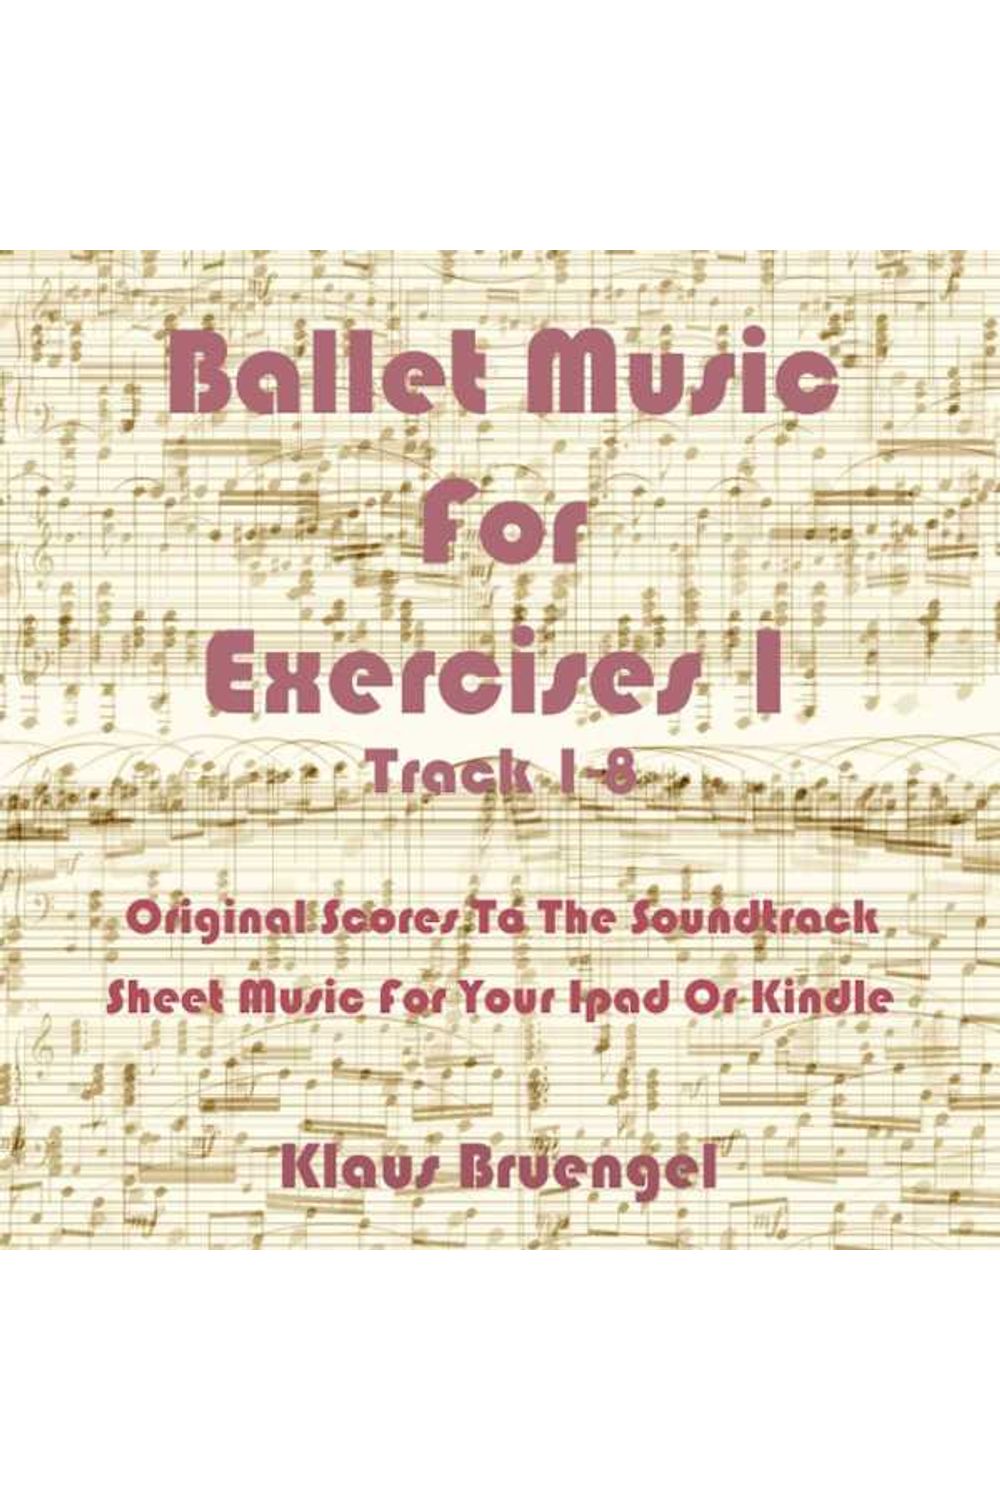 bw-ballet-music-for-exercises-1-track-18-klaus-bruengel-9783955771430